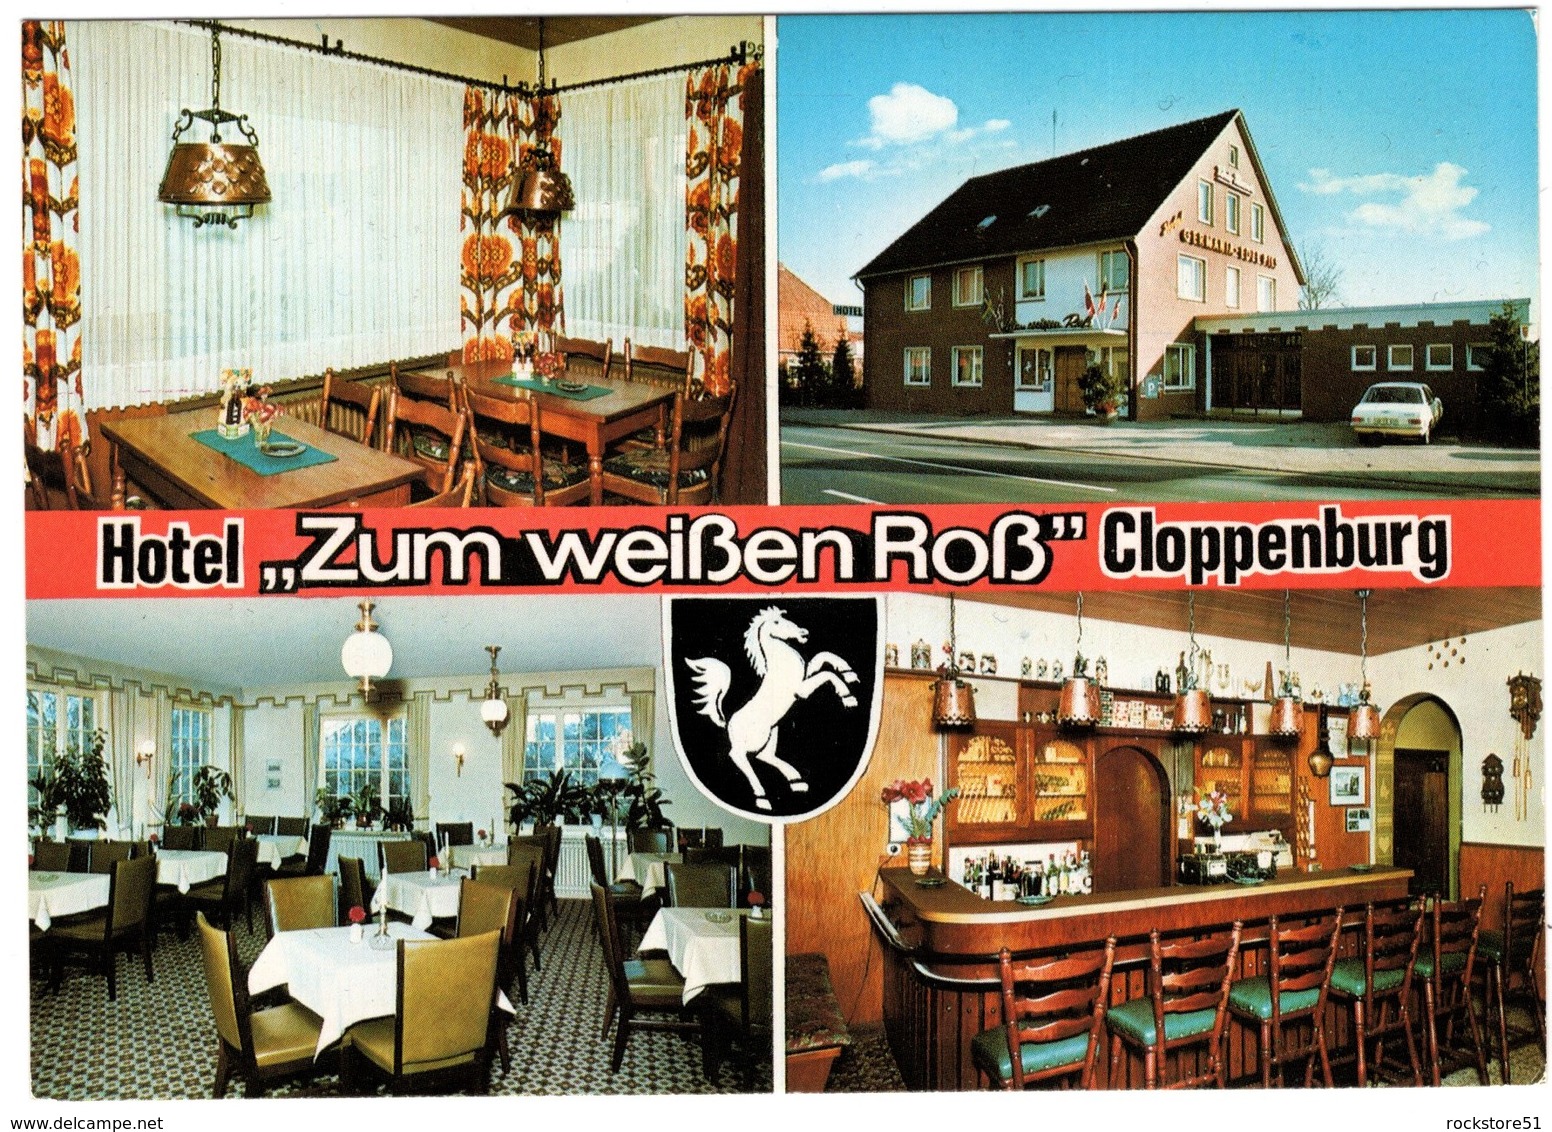 Cloppenburg Hotel Zum Weissen Ross - Cloppenburg